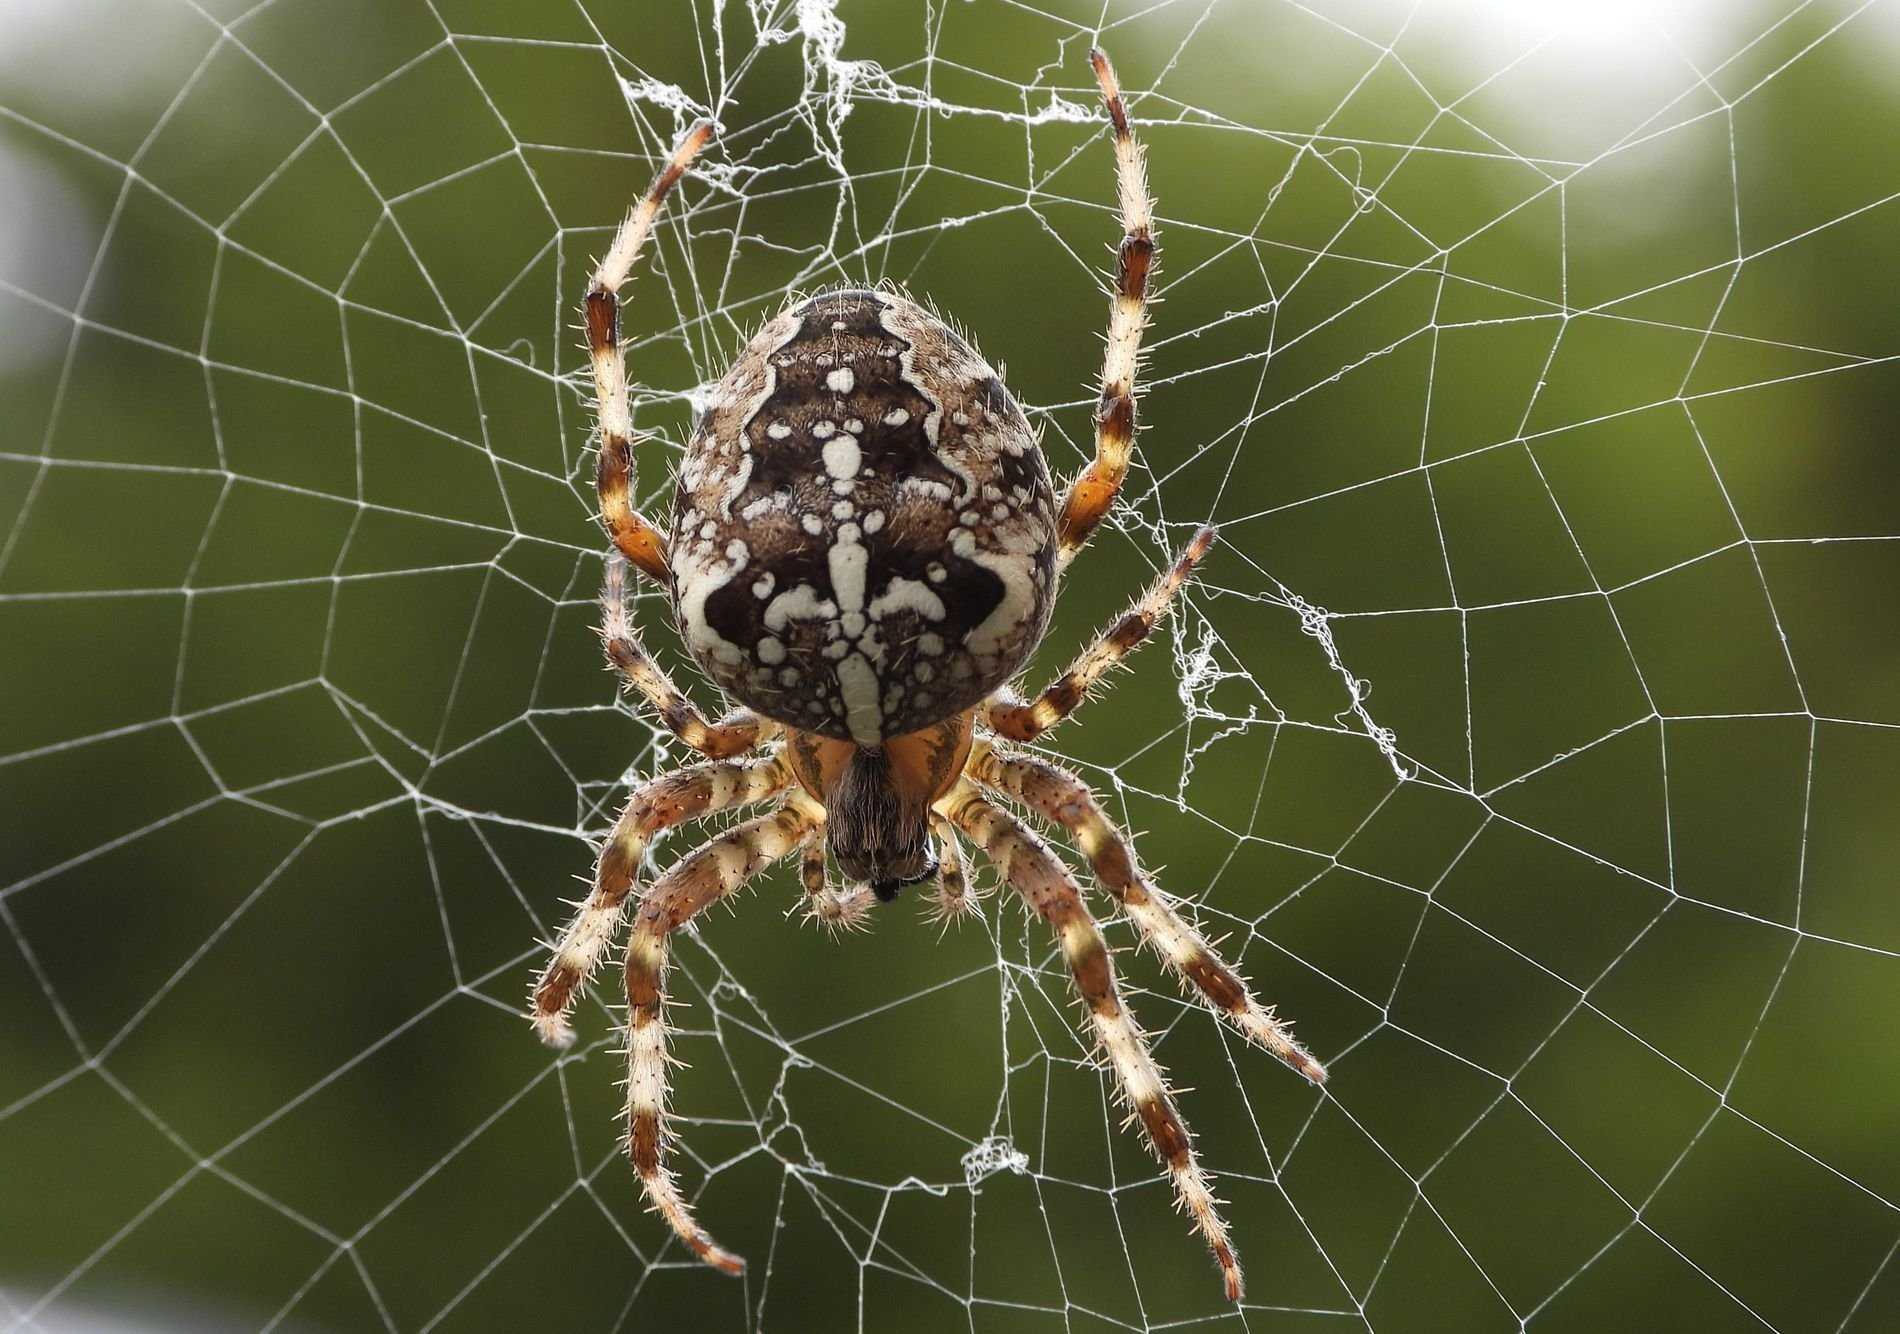 Какую опасность представляет паук-крестовик